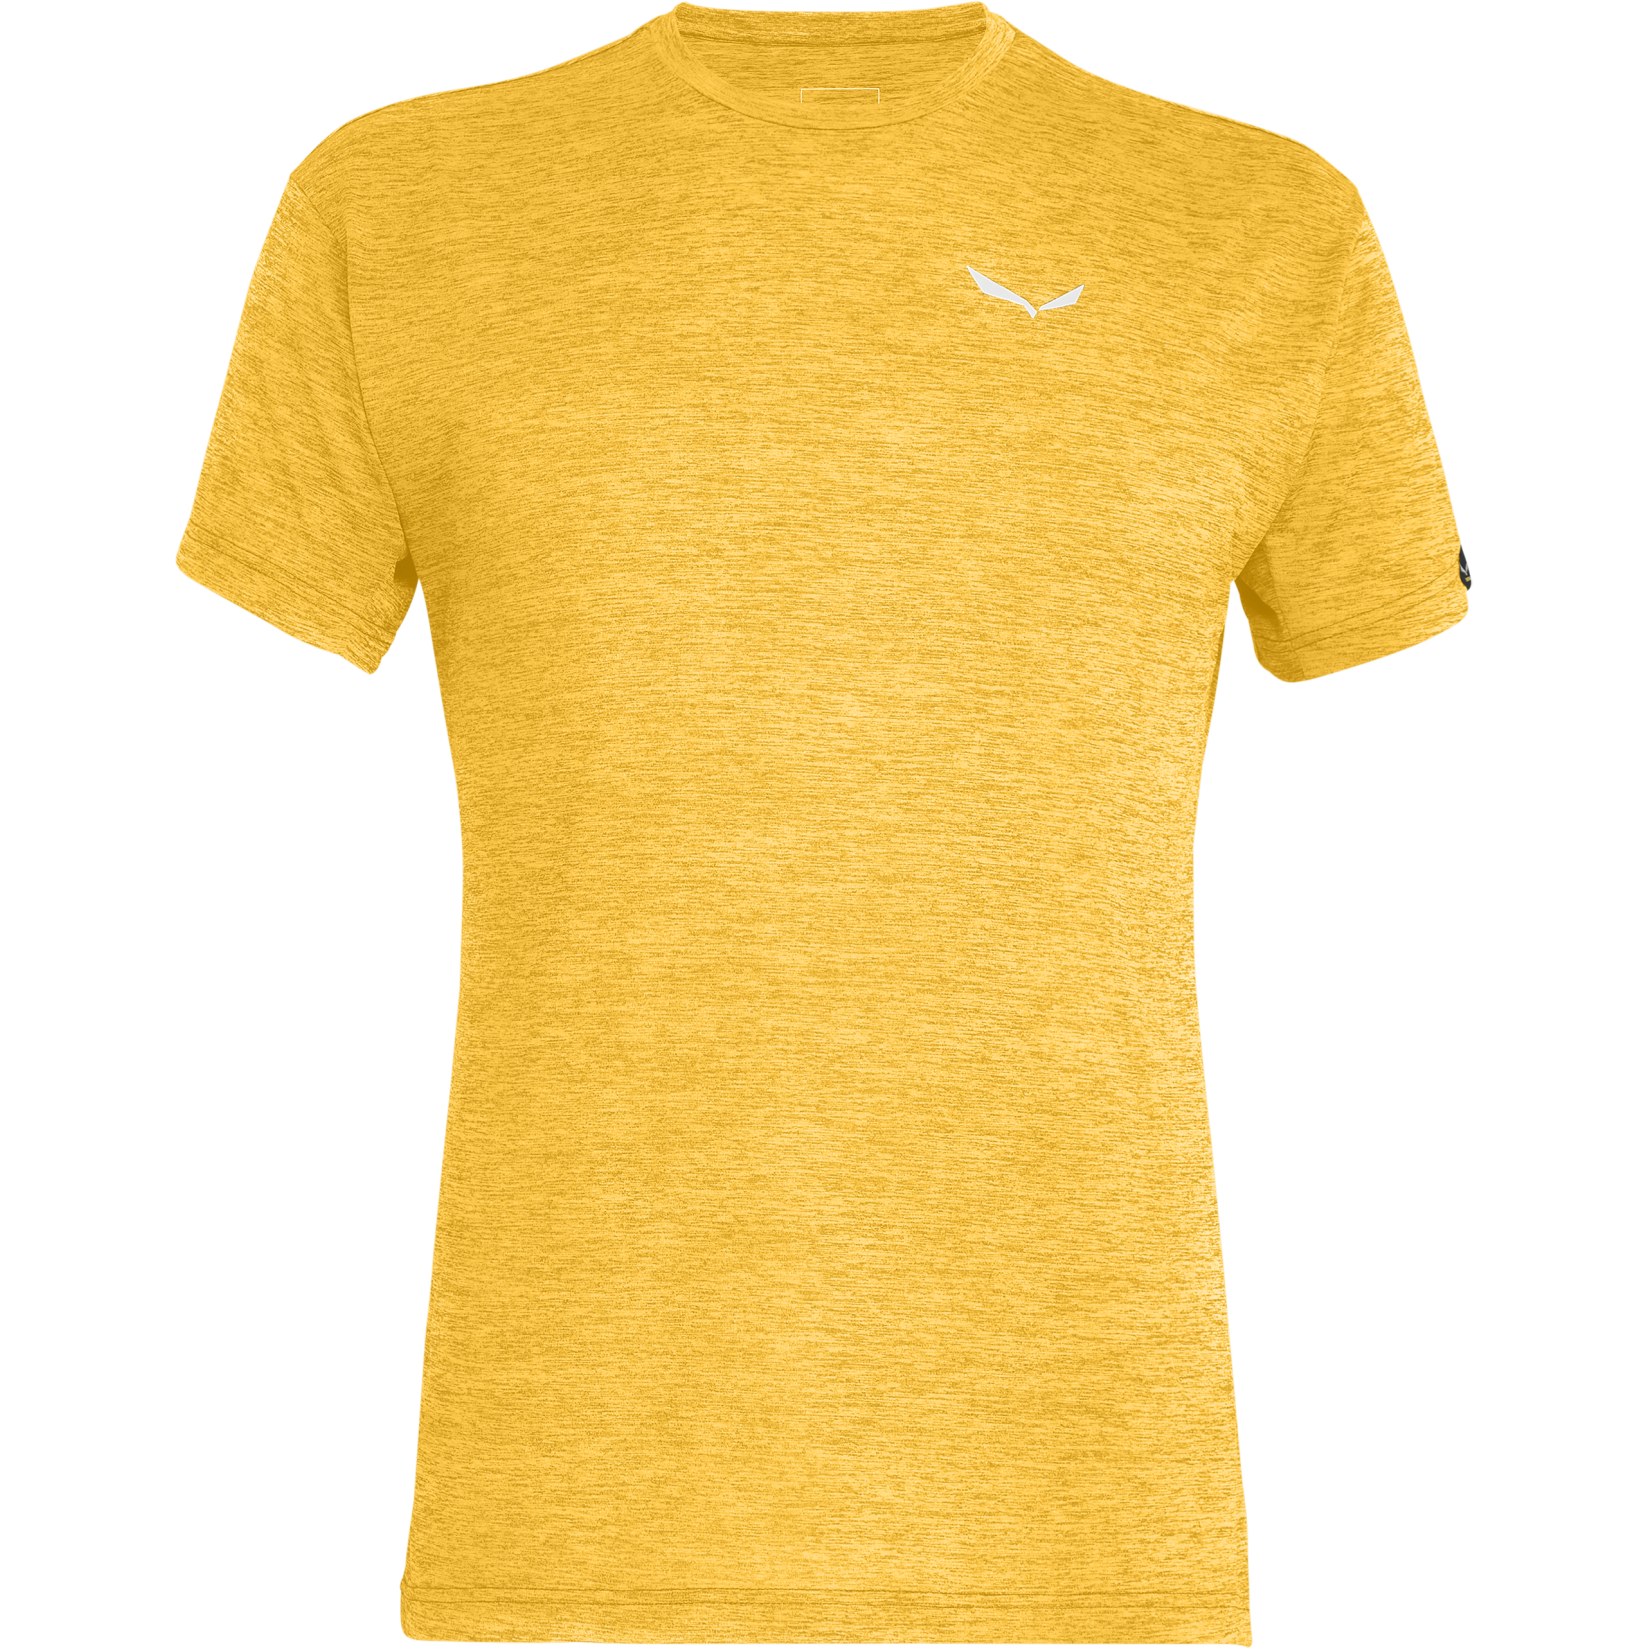 Produktbild von Salewa Puez Melange Dry T-Shirt - gold melange 2196